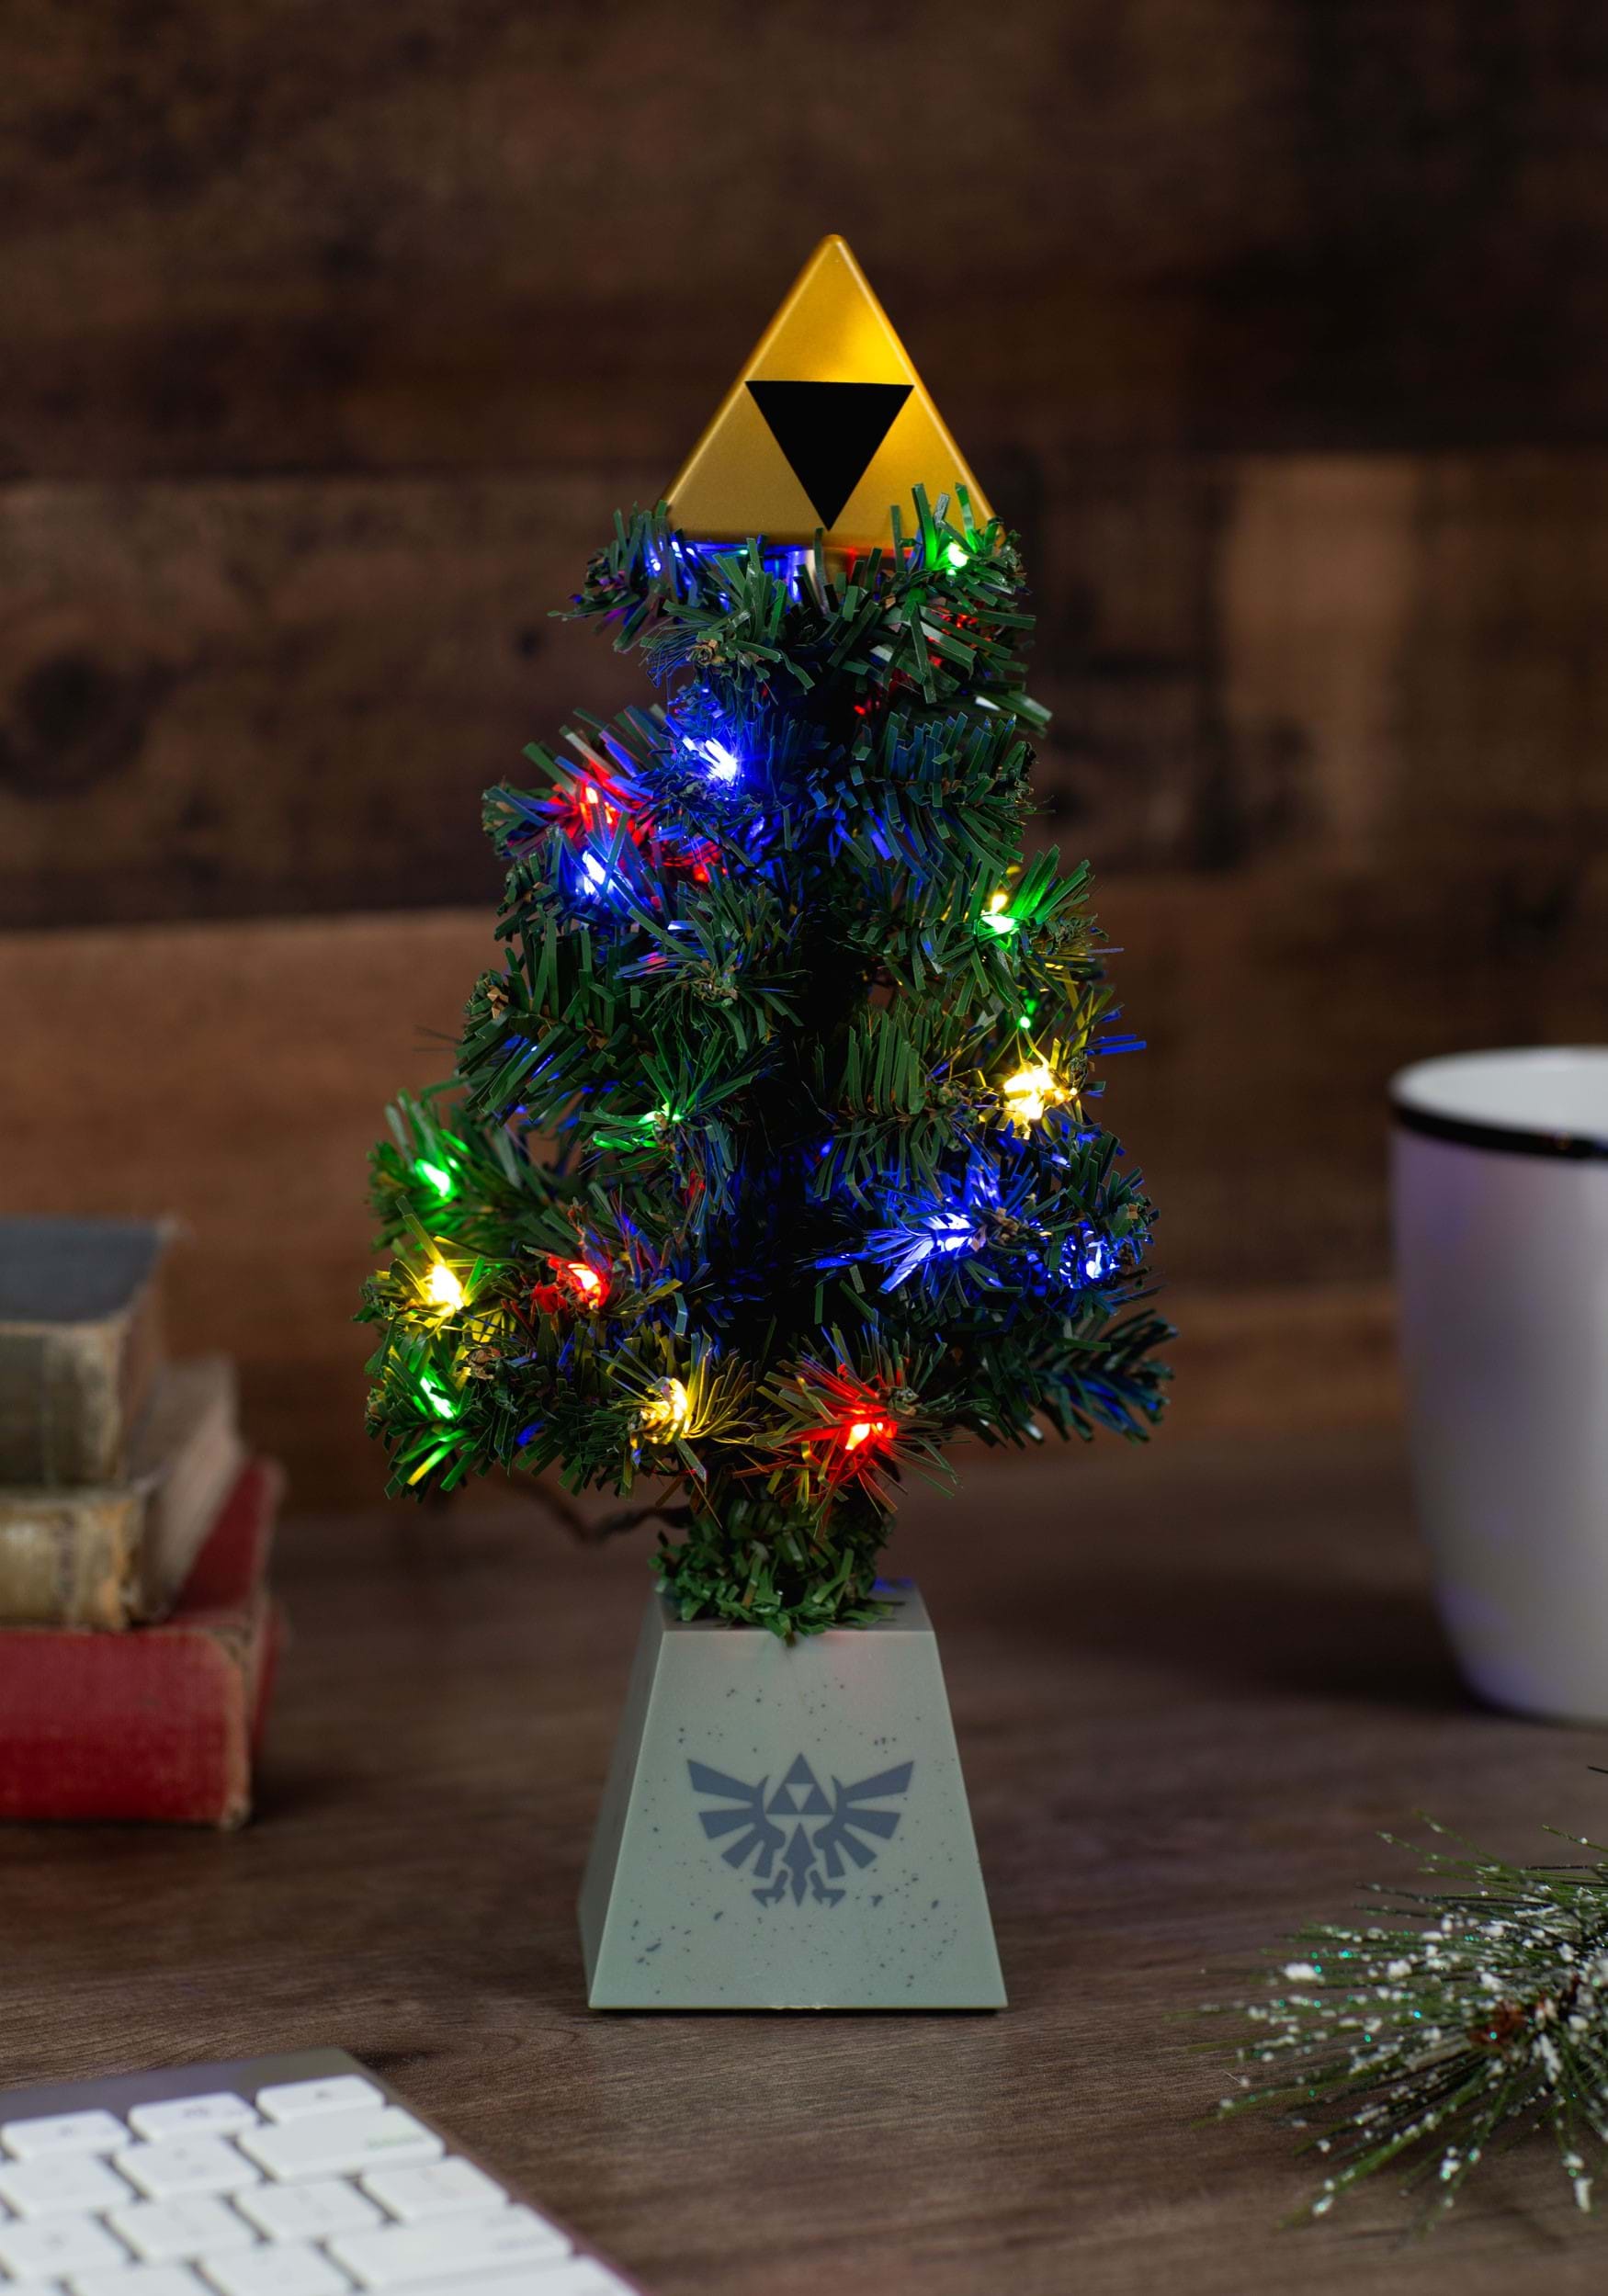 Legend of Zelda Triforce LED USB Light-Up Tree